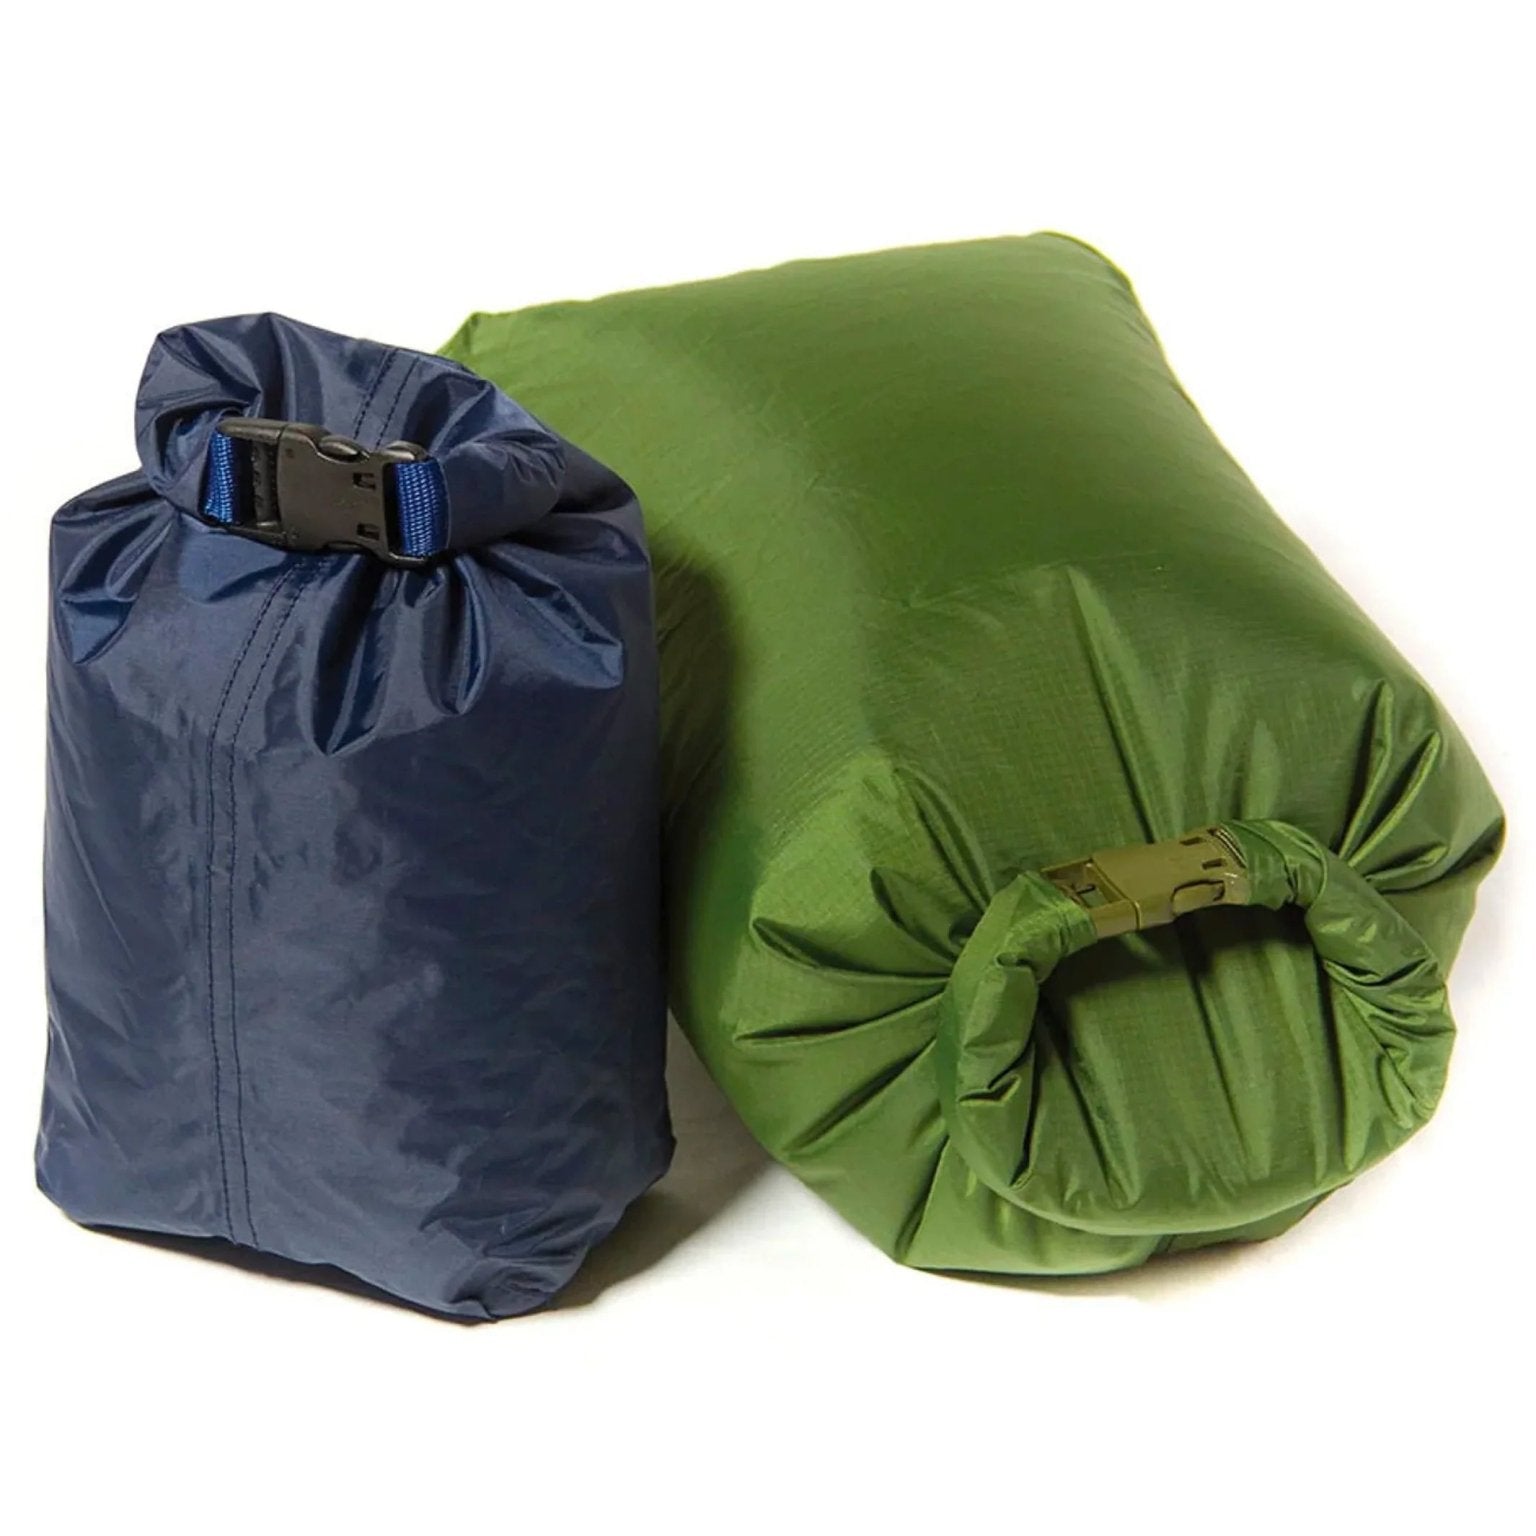 4elementsclothingArktisArktis - Waterproof 8 litre Drysack / Dry bag - T390 - Waterproof taped seamsBagT390-G